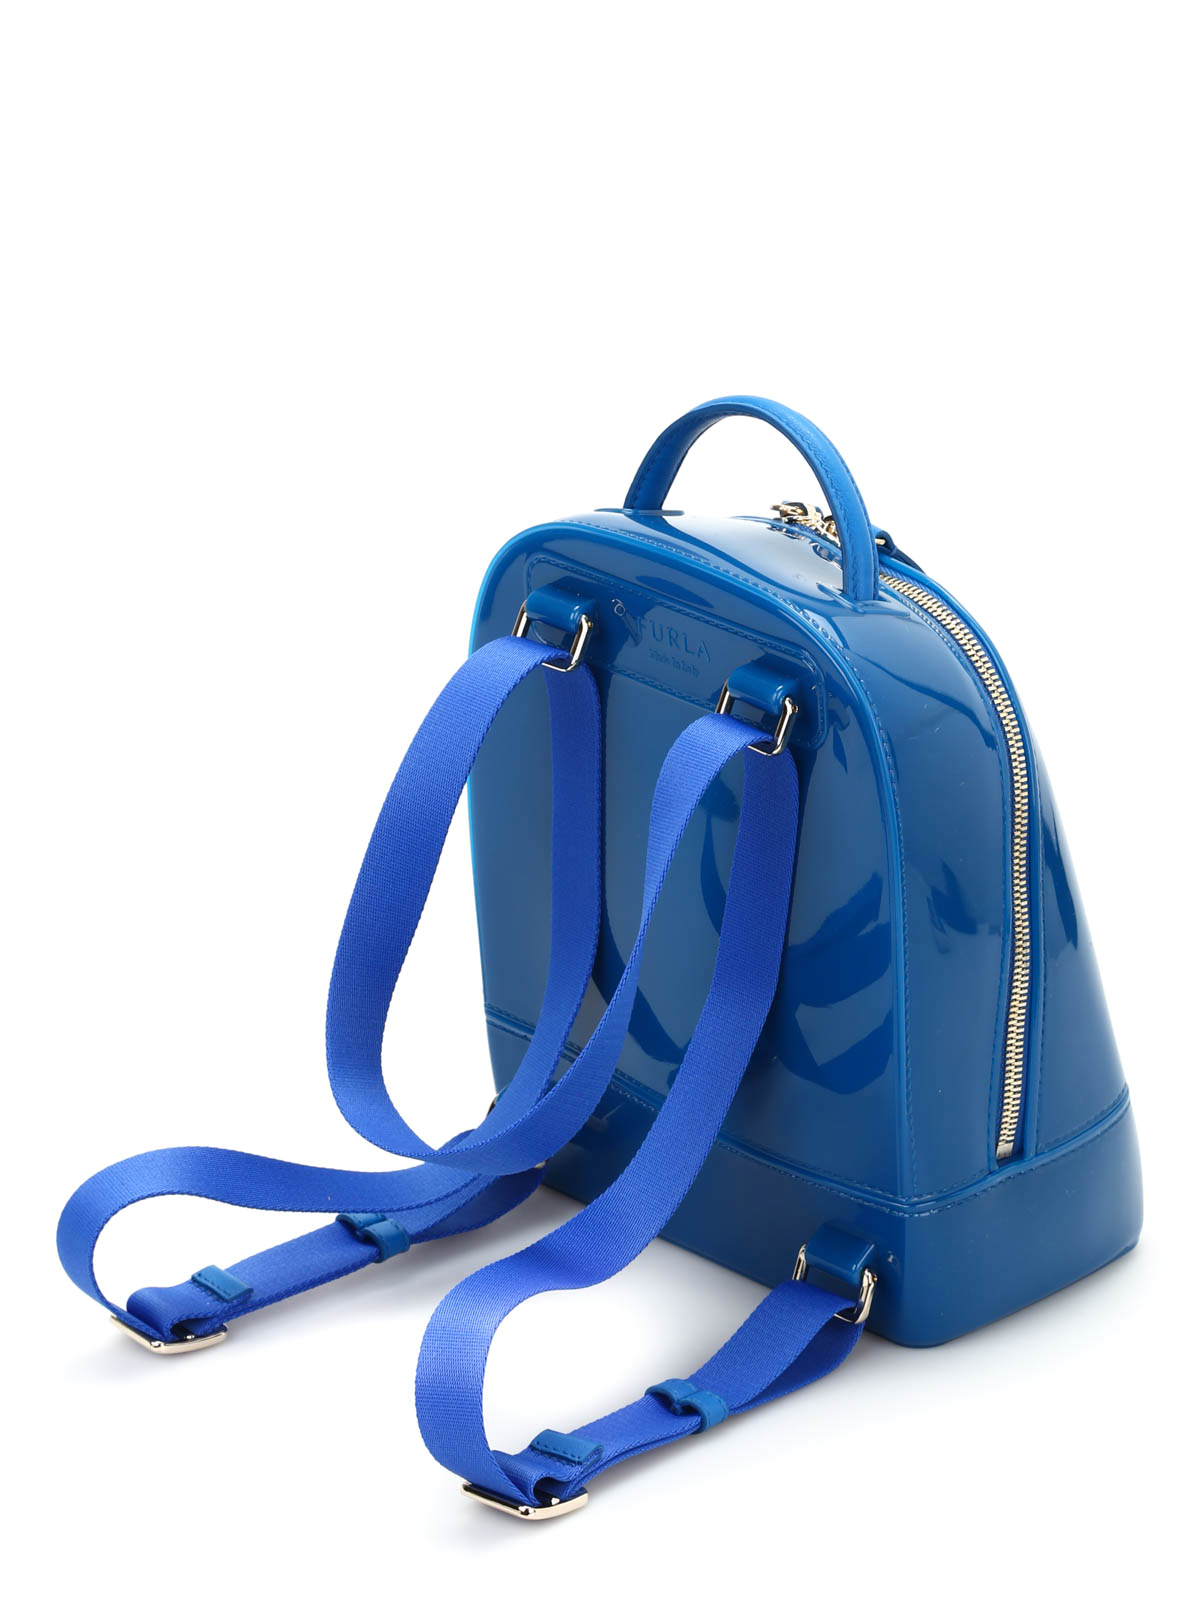 Backpacks Furla - Candy backpack - 817093BLUETTE | Shop online at